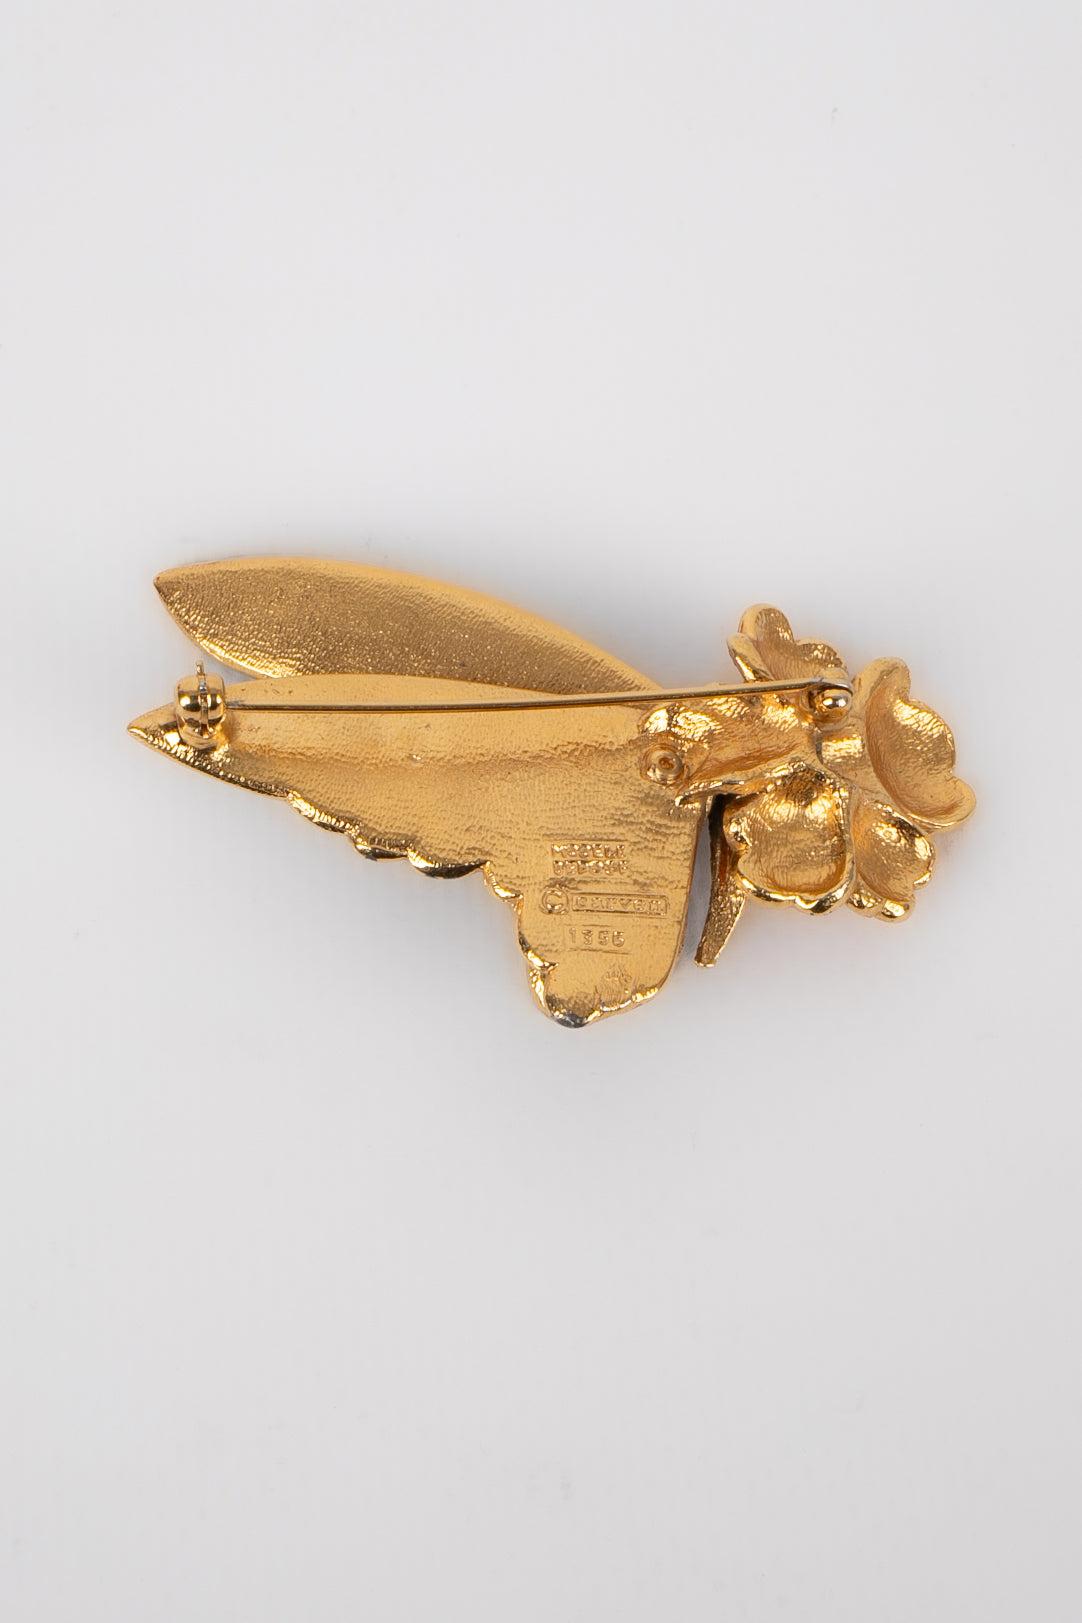 Carven - (Fabriqué en France) Broche en métal doré avec émail représentant un papillon récoltant du pollen sur une fleur.
 
 Informations complémentaires : 
 Condit : Très bon état.
 Dimensions : 6,5 cm x 4 cm : 6,5 cm x 4 cm
 
 Référence du vendeur